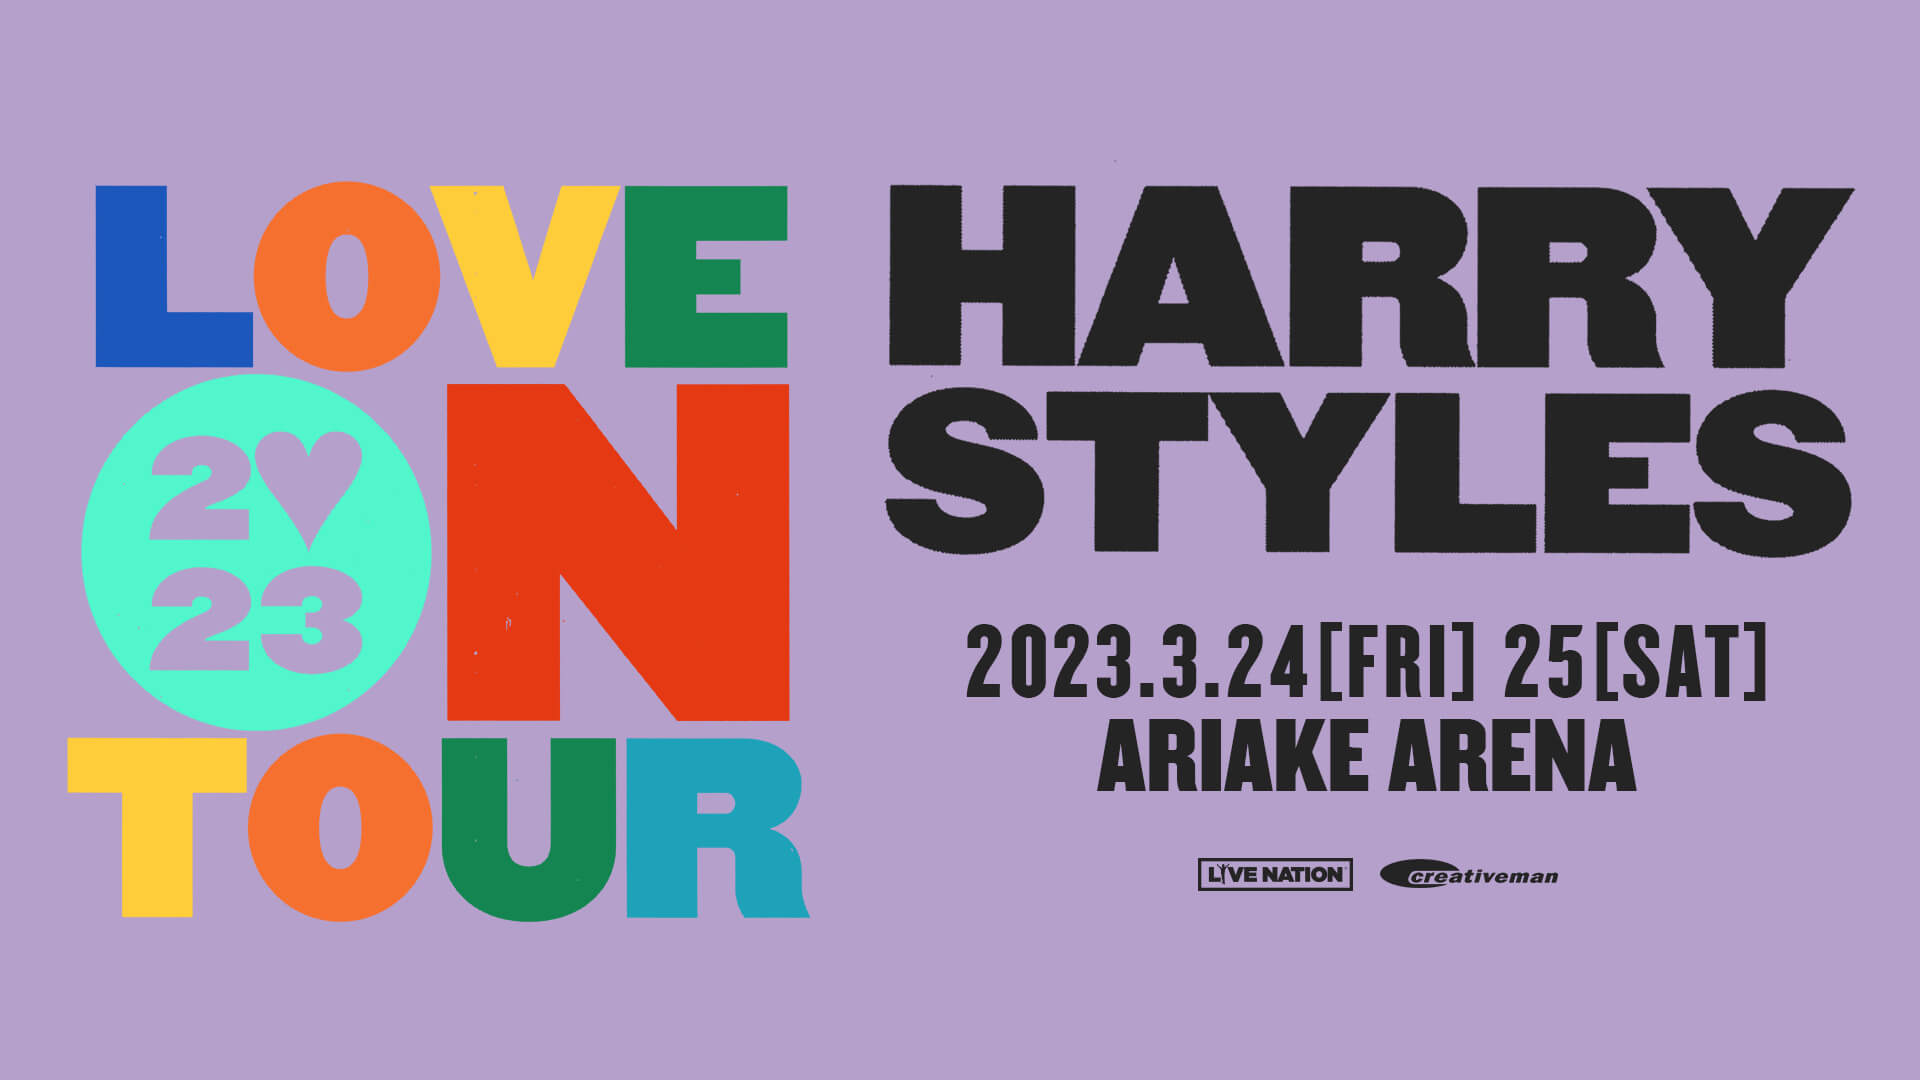 ハリースタイルズ 2023年 JAPAN LIVE VIP 限定グッズ - コレクション